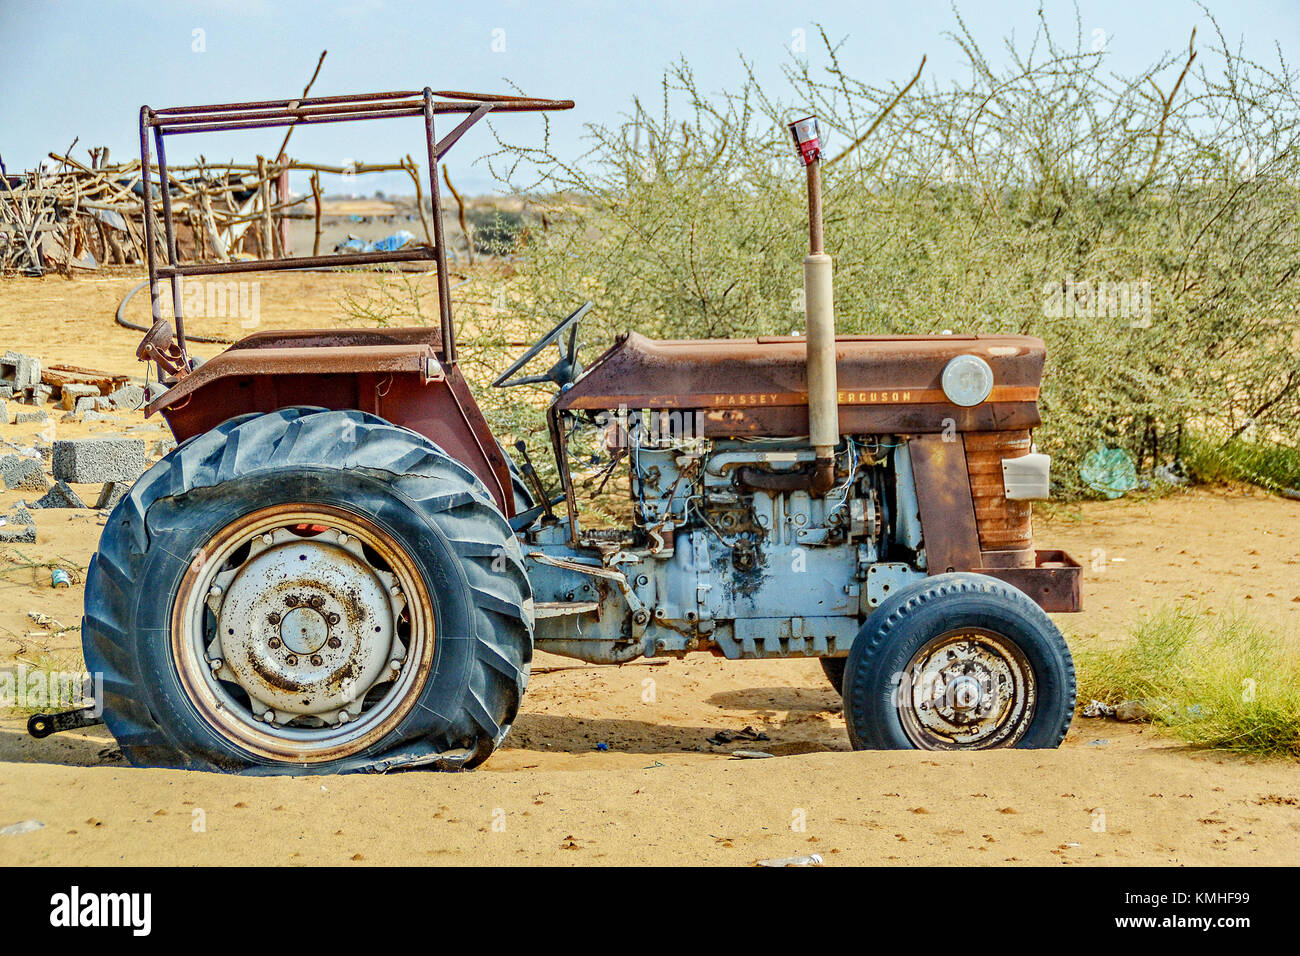 Tracteur rouillé abandonné dans le désert au sud de Jeddah Arabie à Qunfudaha. Banque D'Images